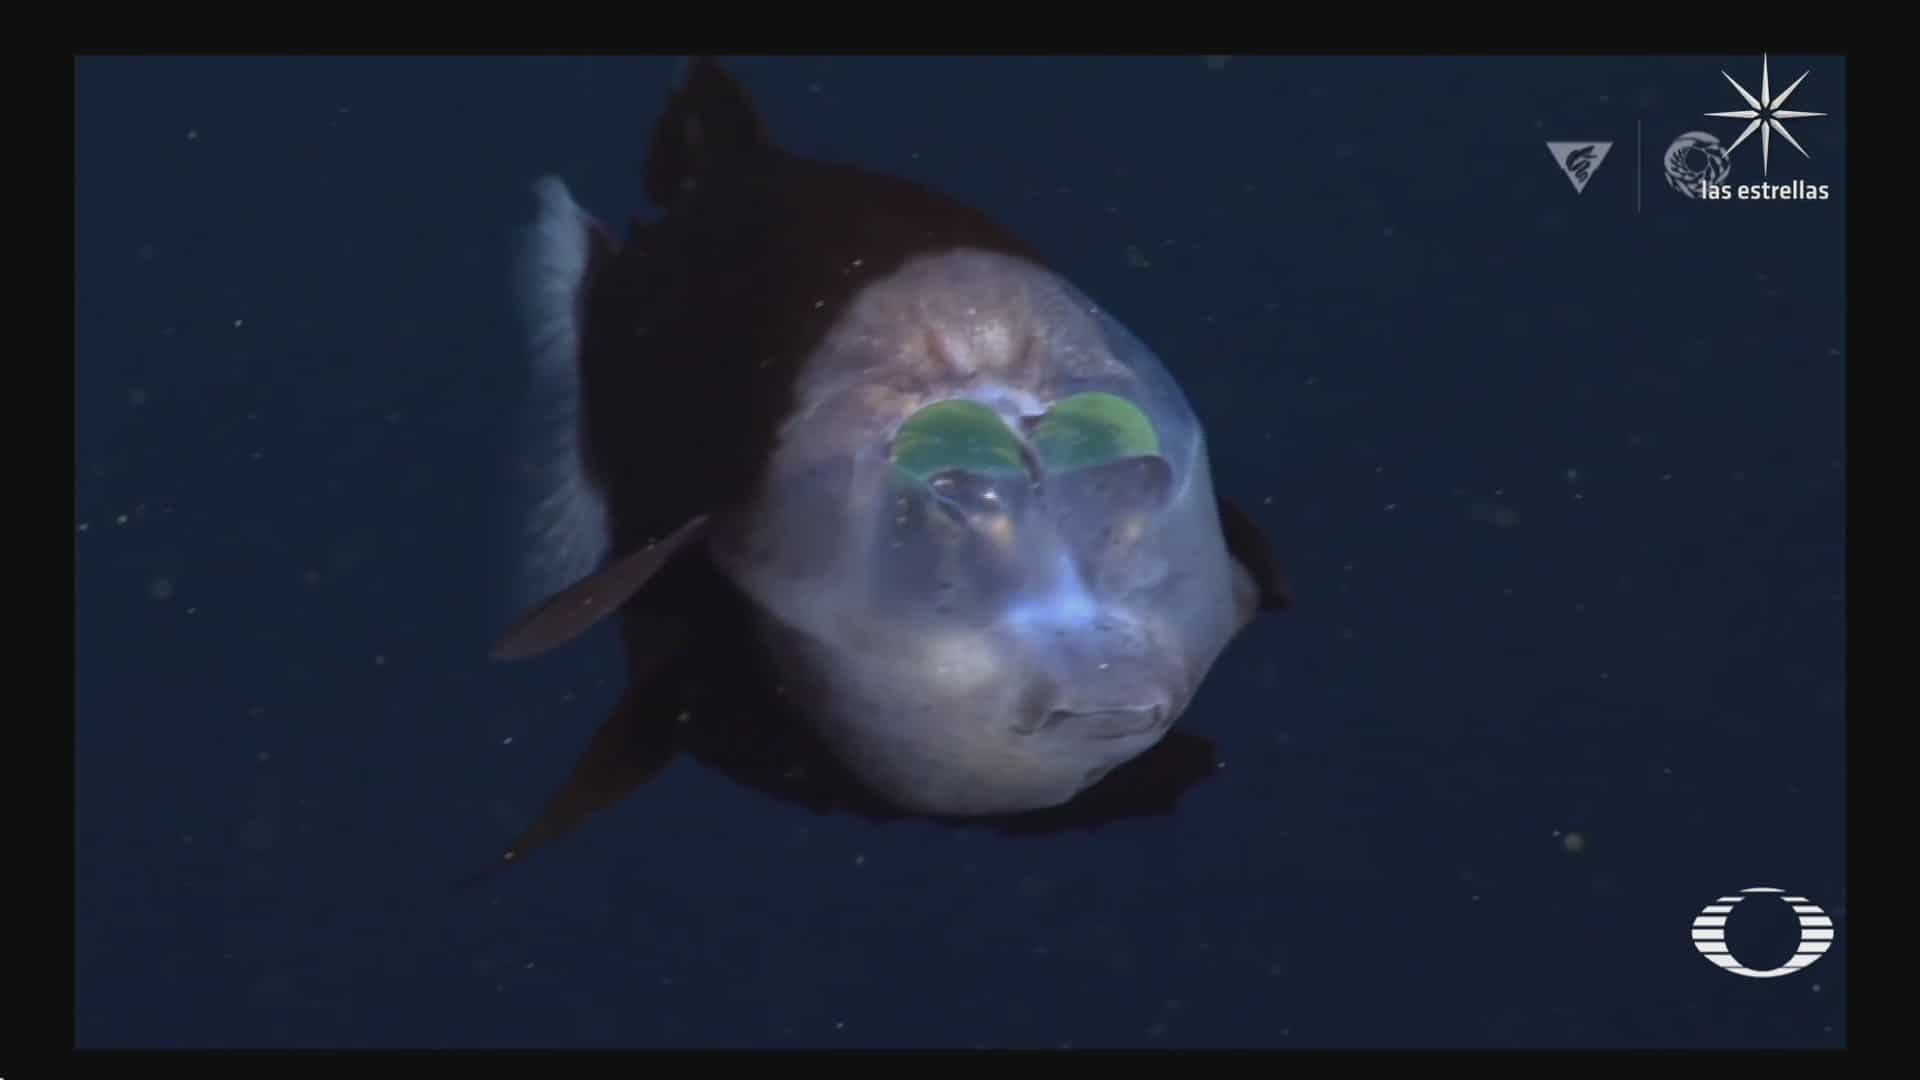 captan a extrano pez de cabeza traslucida en oceano pacifico